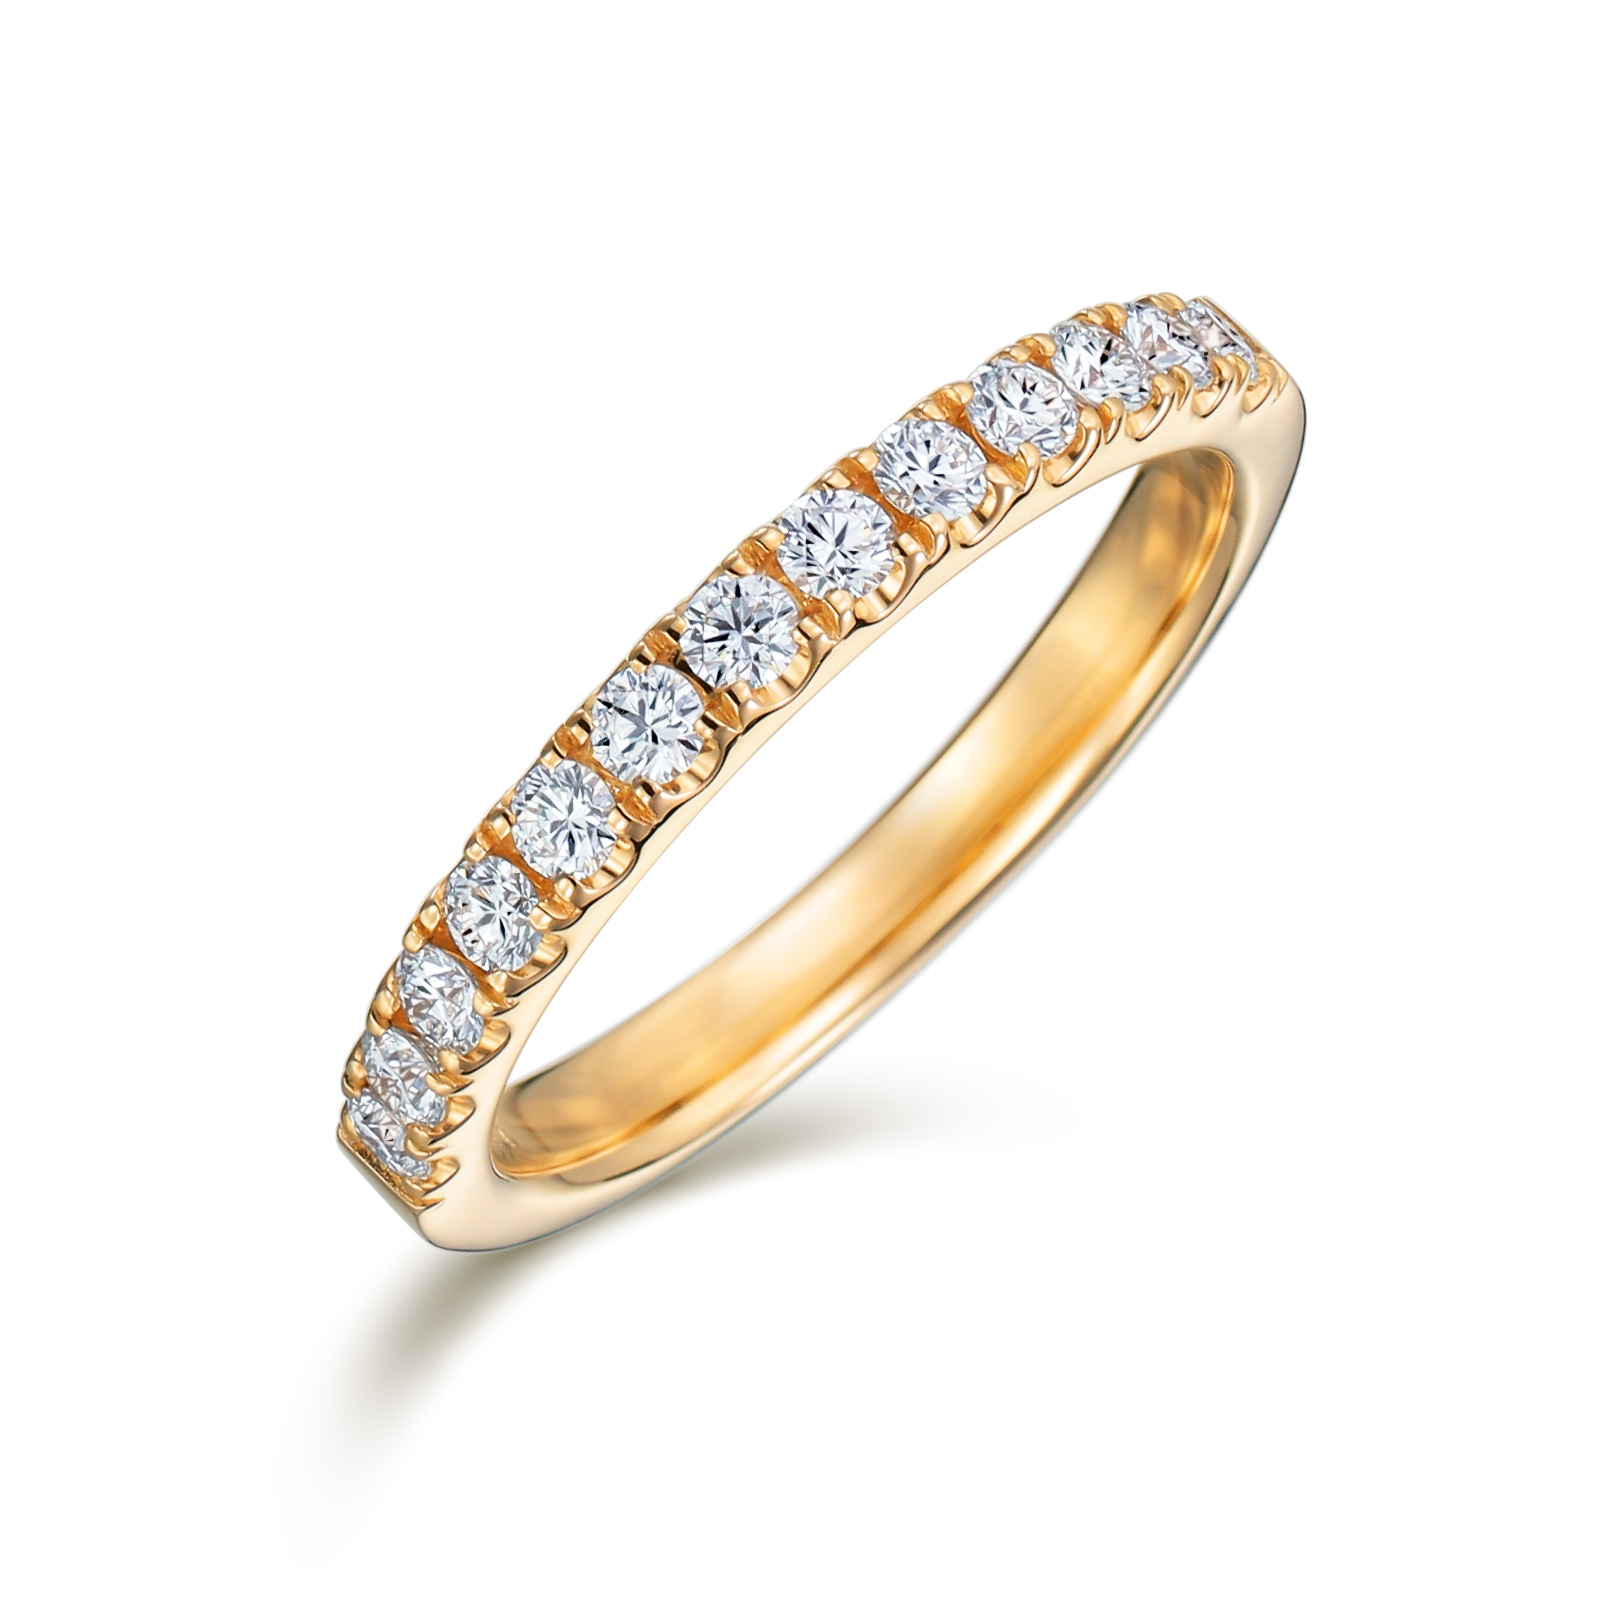 エタニティリング 爪留め K18イエローゴールド 30代の方の結婚指輪に | エタニティリング通販 | 山梨・甲府のジュエリーブランドIZURU